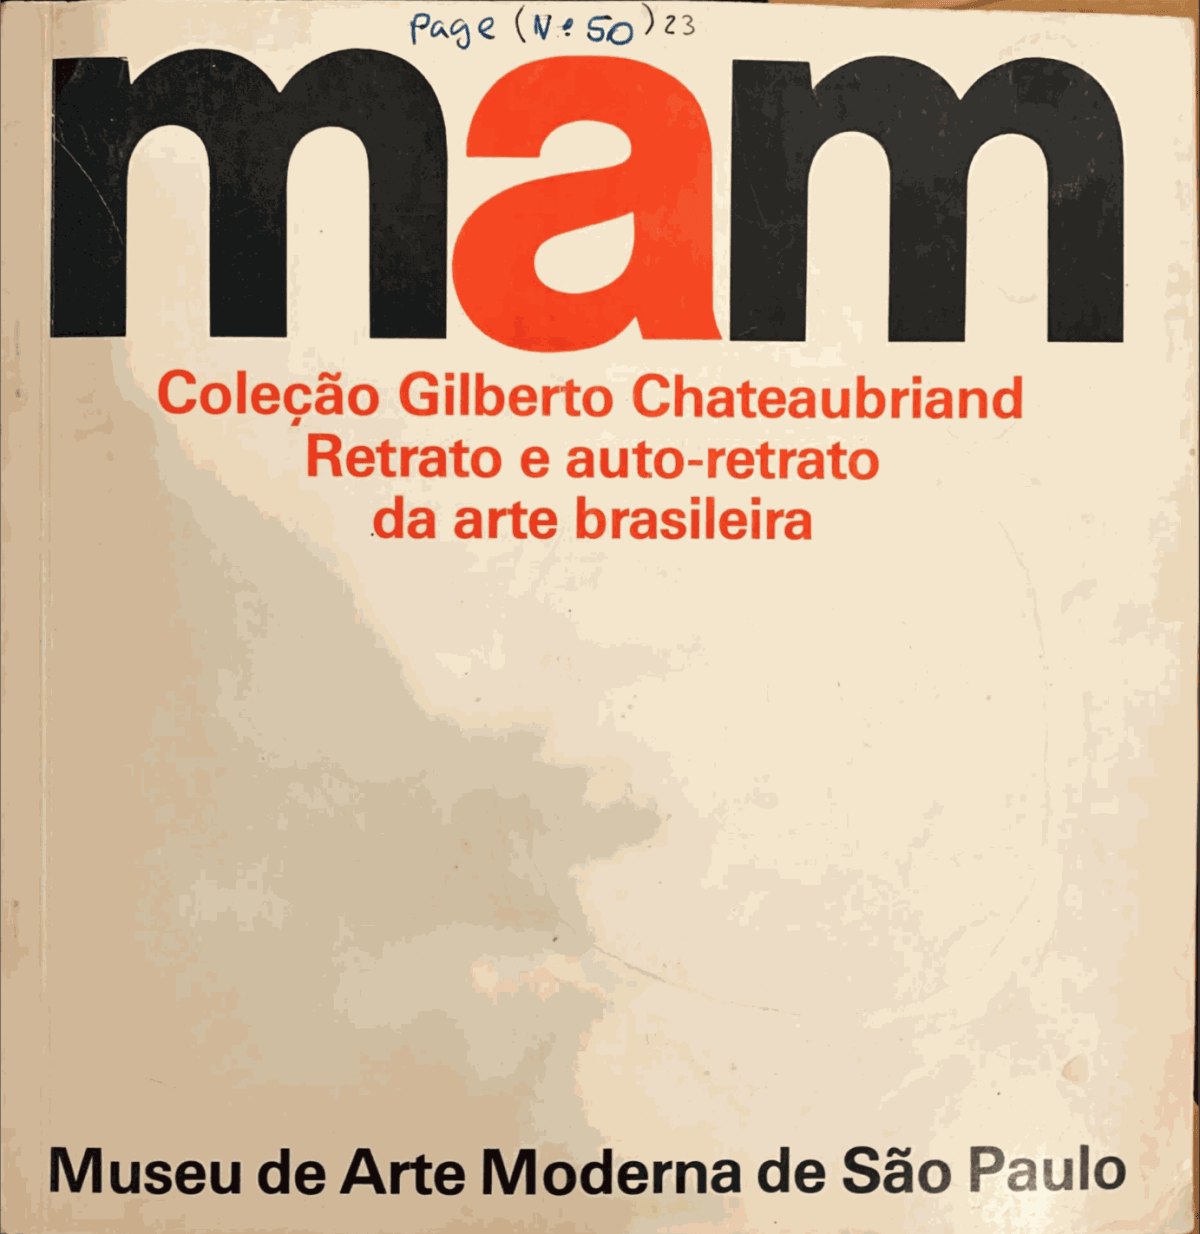 Coleção Gilberto Chateaubriand Retrato e auto-retrato da arte brasileira